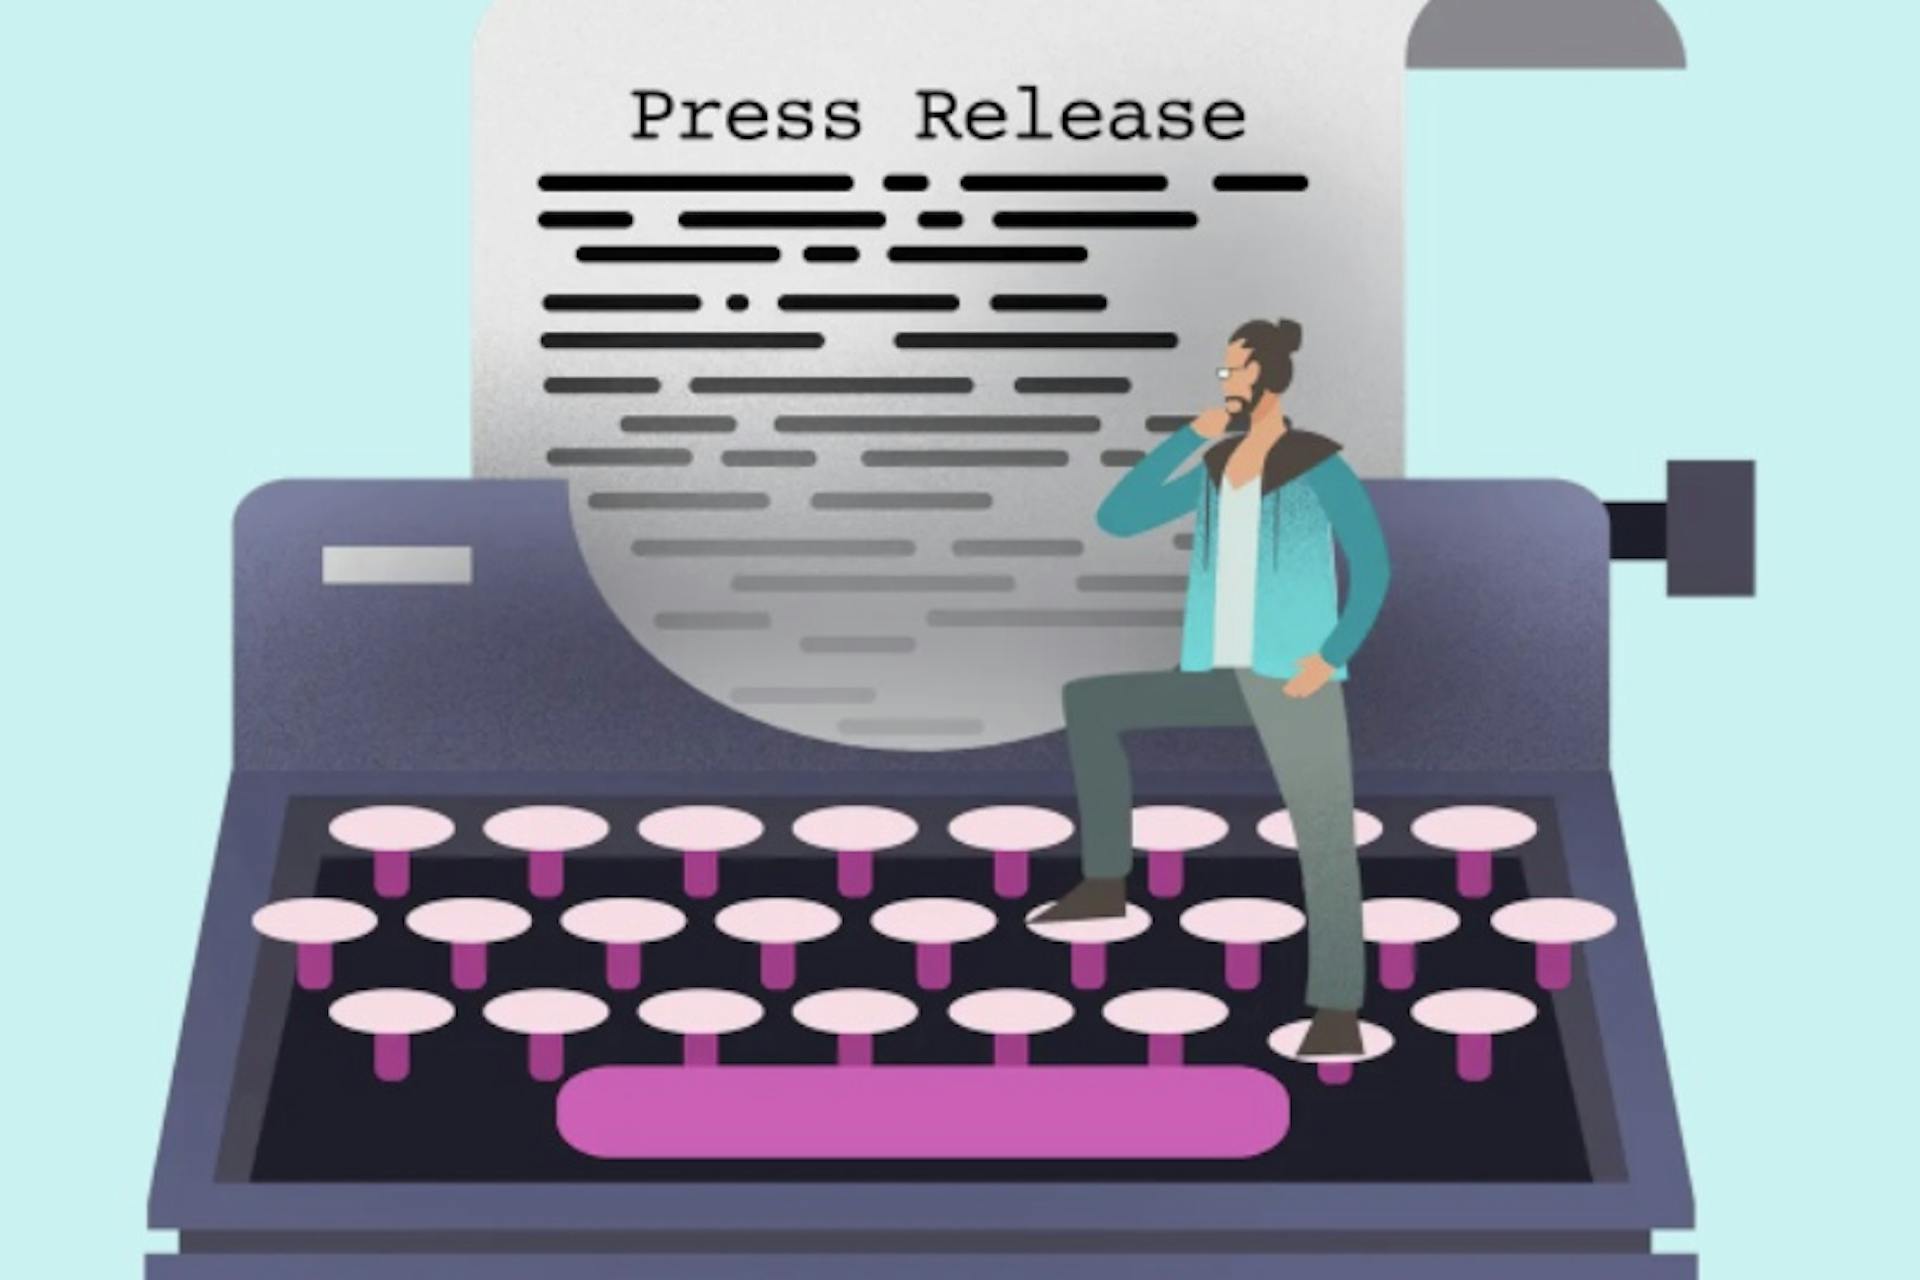 Ein illustrierter Mann steht auf einer Schreibmaschine, in der ein Blatt Papier mit den Wörtern Press Release liegt